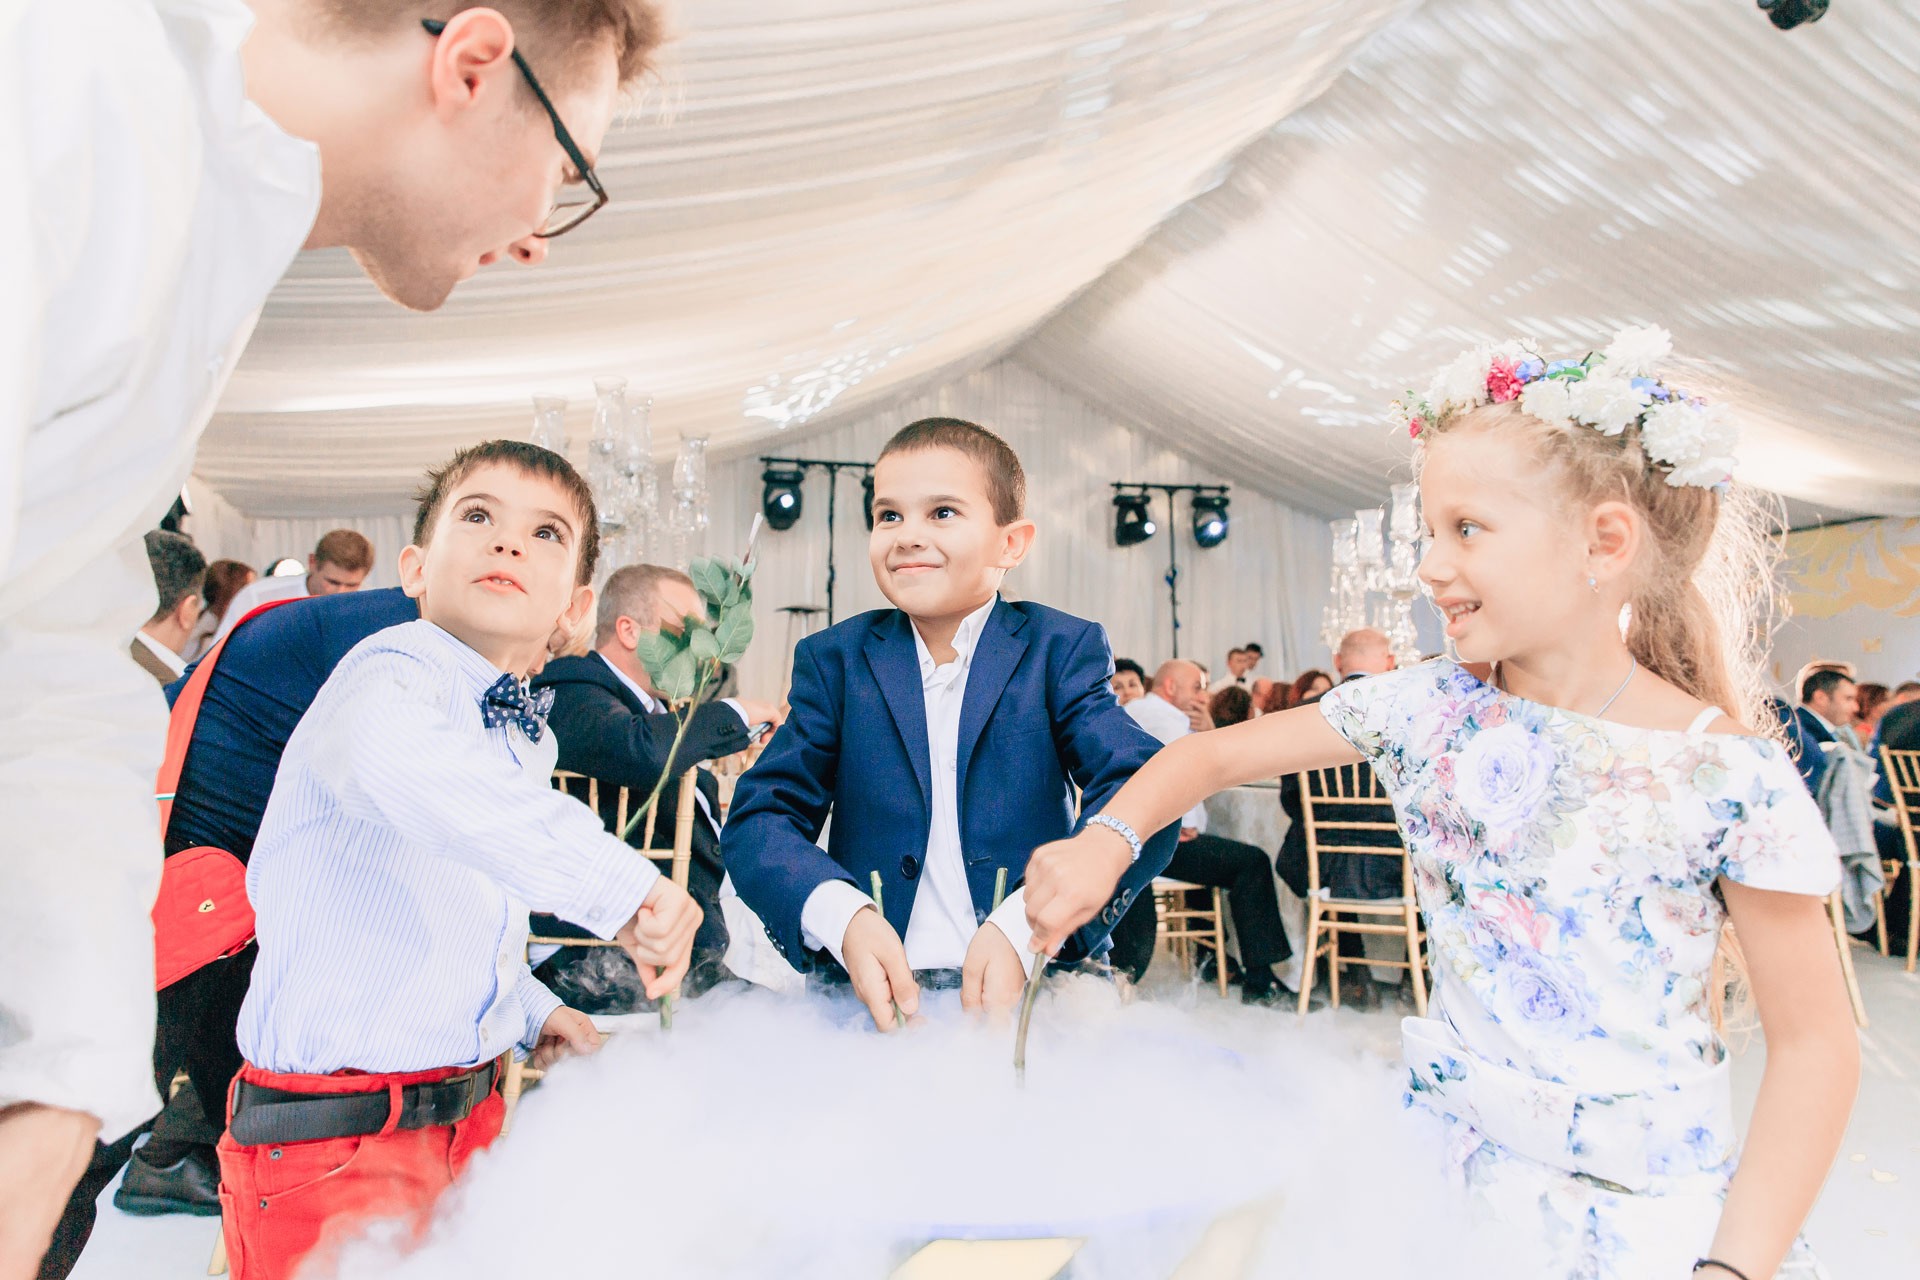 Дети на свадьбе - что учесть и к чему подготовиться